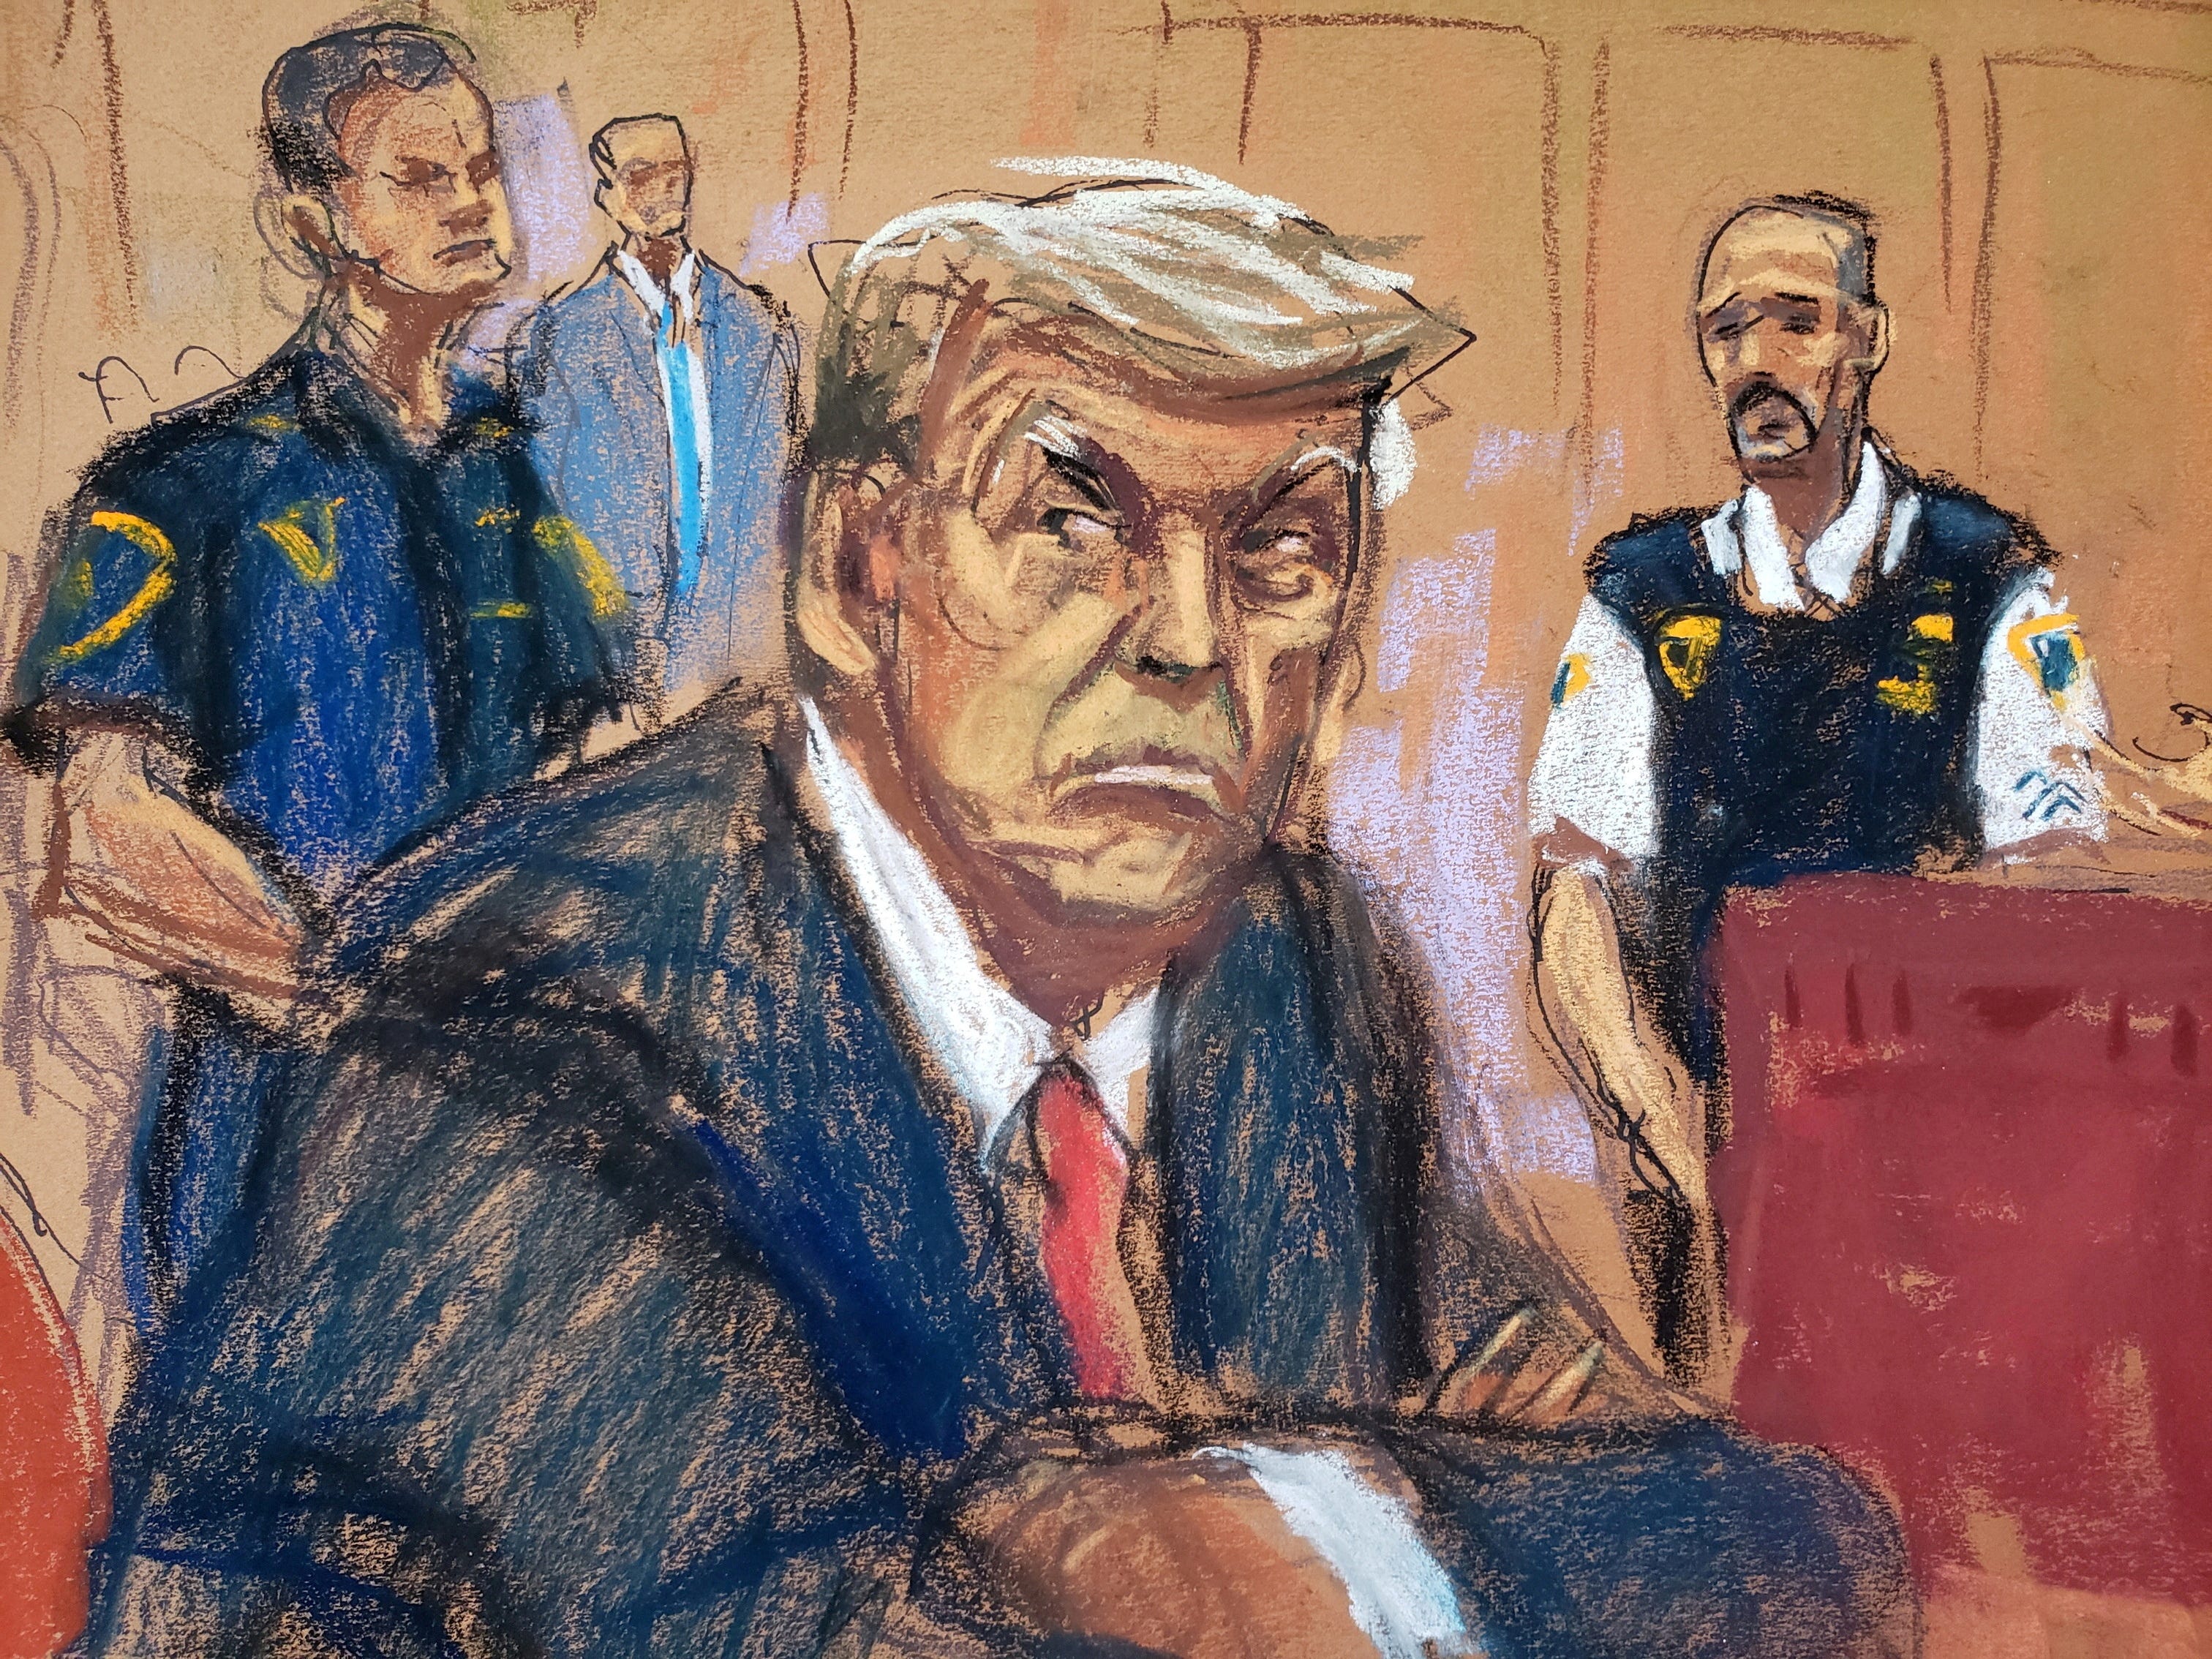 Gerichtssaal-Skizze von Donald Trump